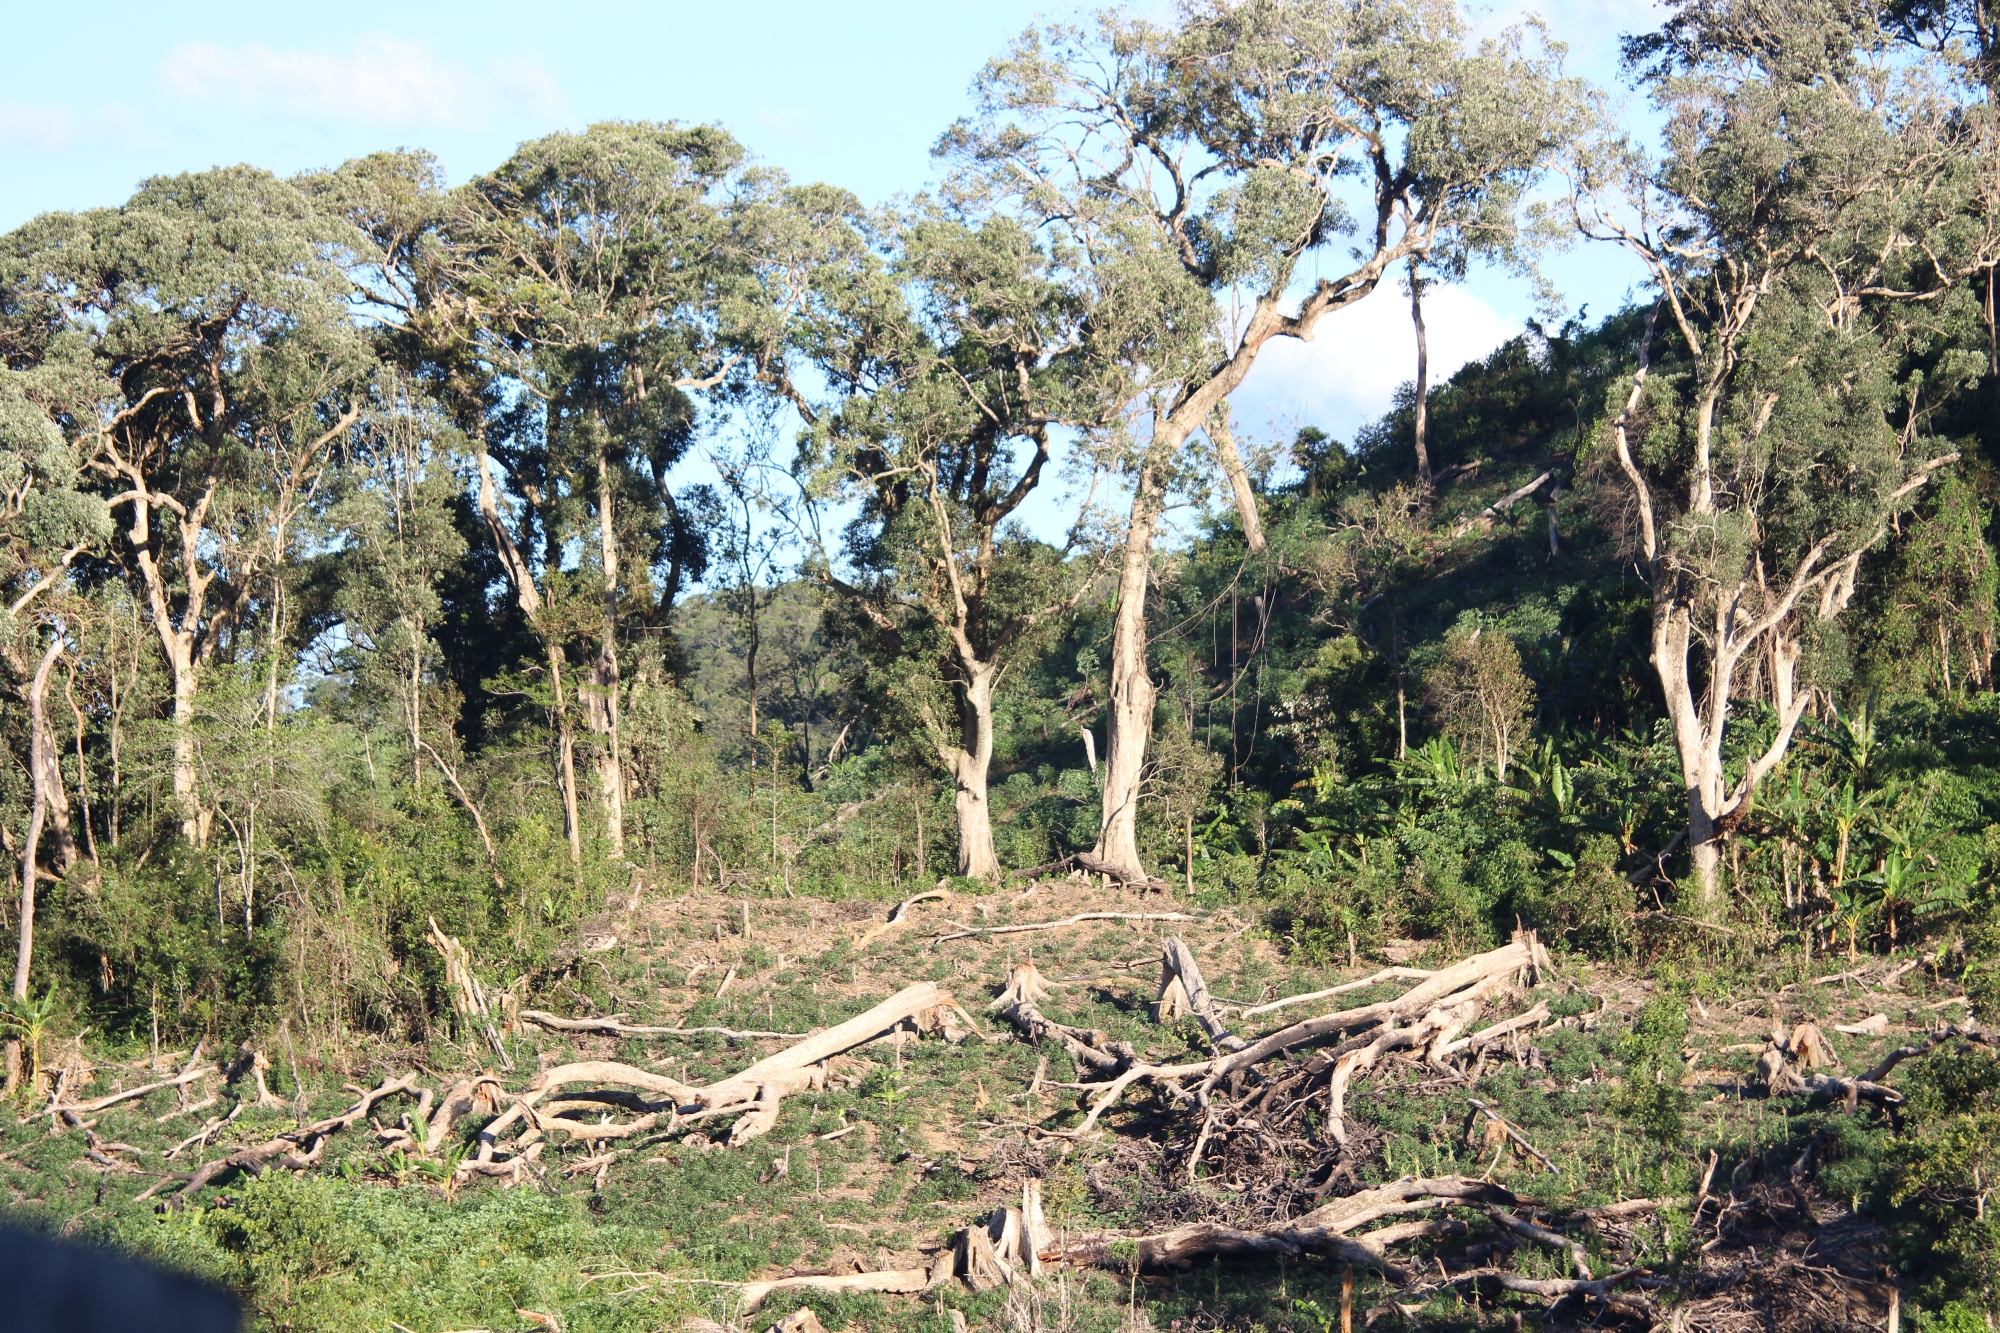 Khu rừng này giao cho cộng đồng bảo vệ, nhưng hàng ngày vẫn bị chặt phá. (Ảnh: Vietnam+)